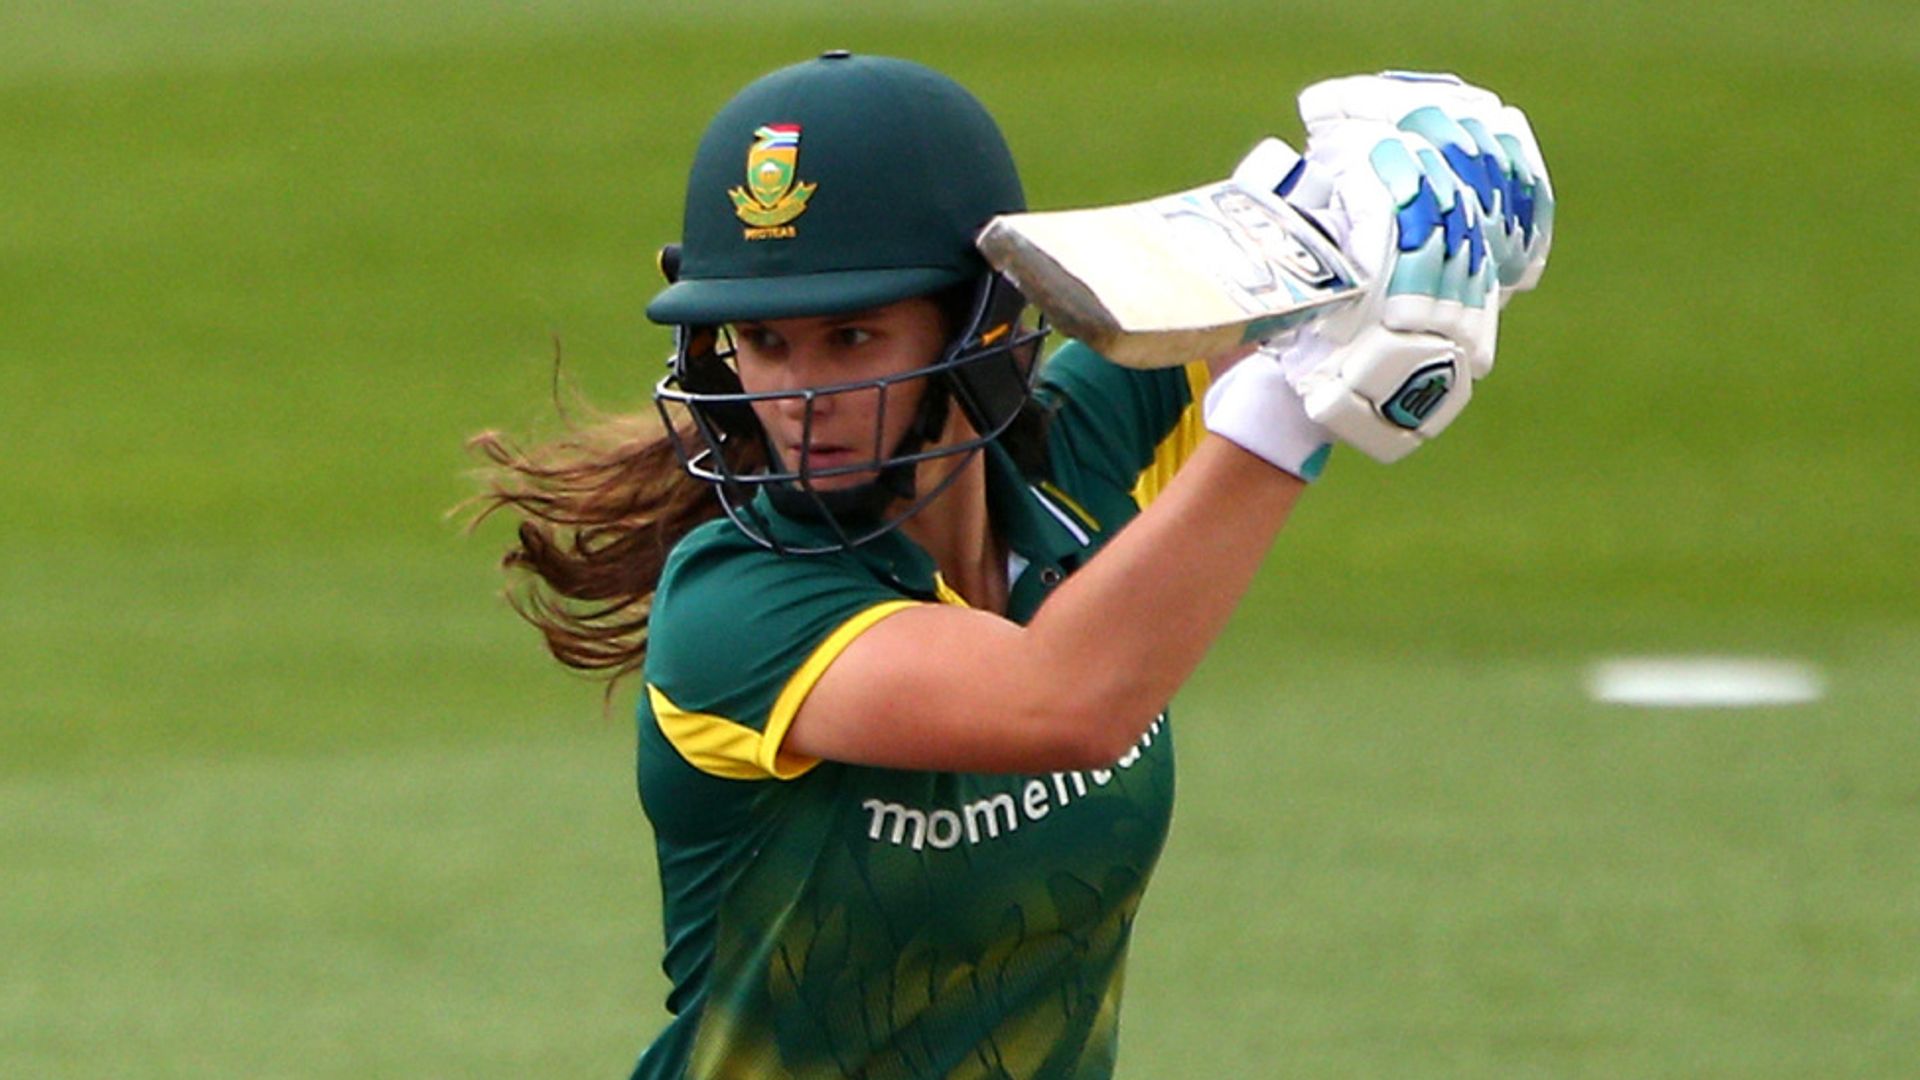 Skor kartı: İngiltere Kadınlar vs Güney Afrika Kadınlar, ilk ODI